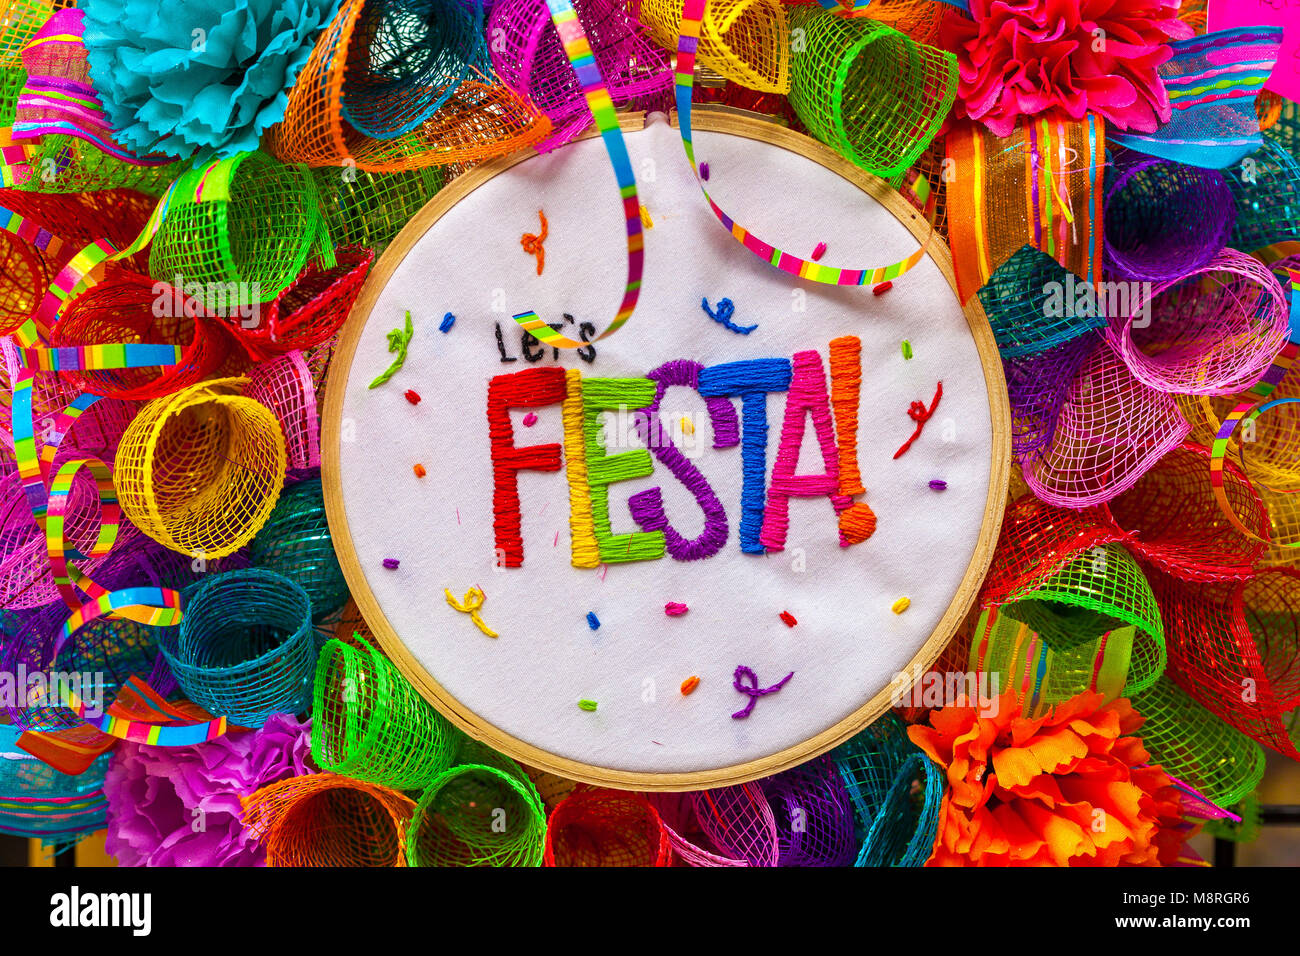 La parola "fiesta" cucito in lettere colorate sulla mescolanza multicolore decorata con glitter e fiori di carta Foto Stock